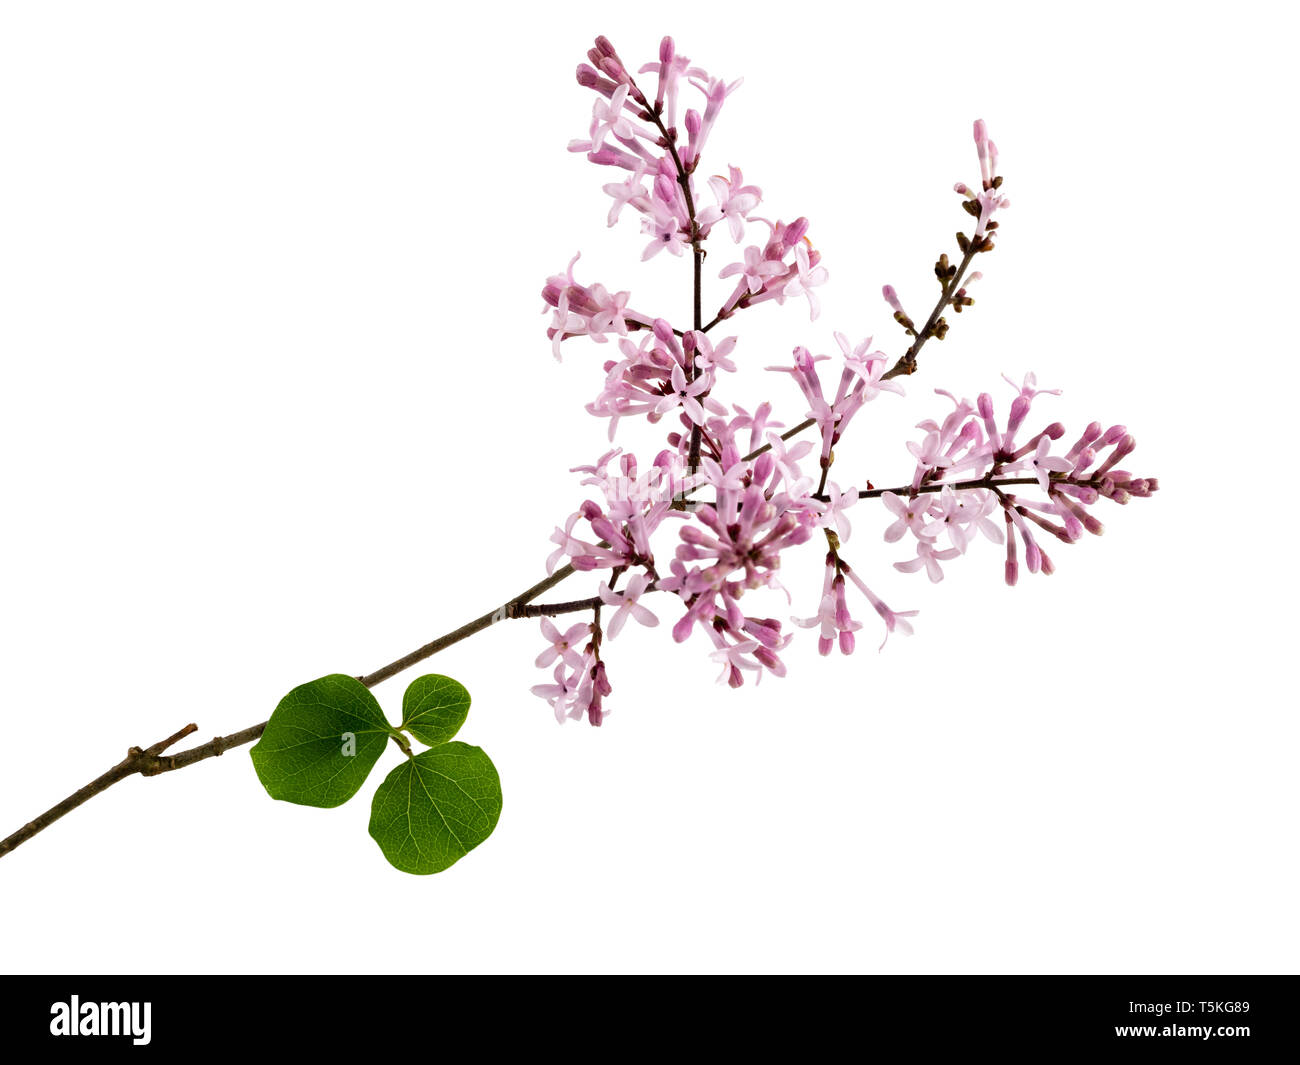 Rose parfumée de fleurs de printemps des feuillus coréen arbustif, Syringa lilas 'Palibin' myeri, isolé sur fond blanc Banque D'Images